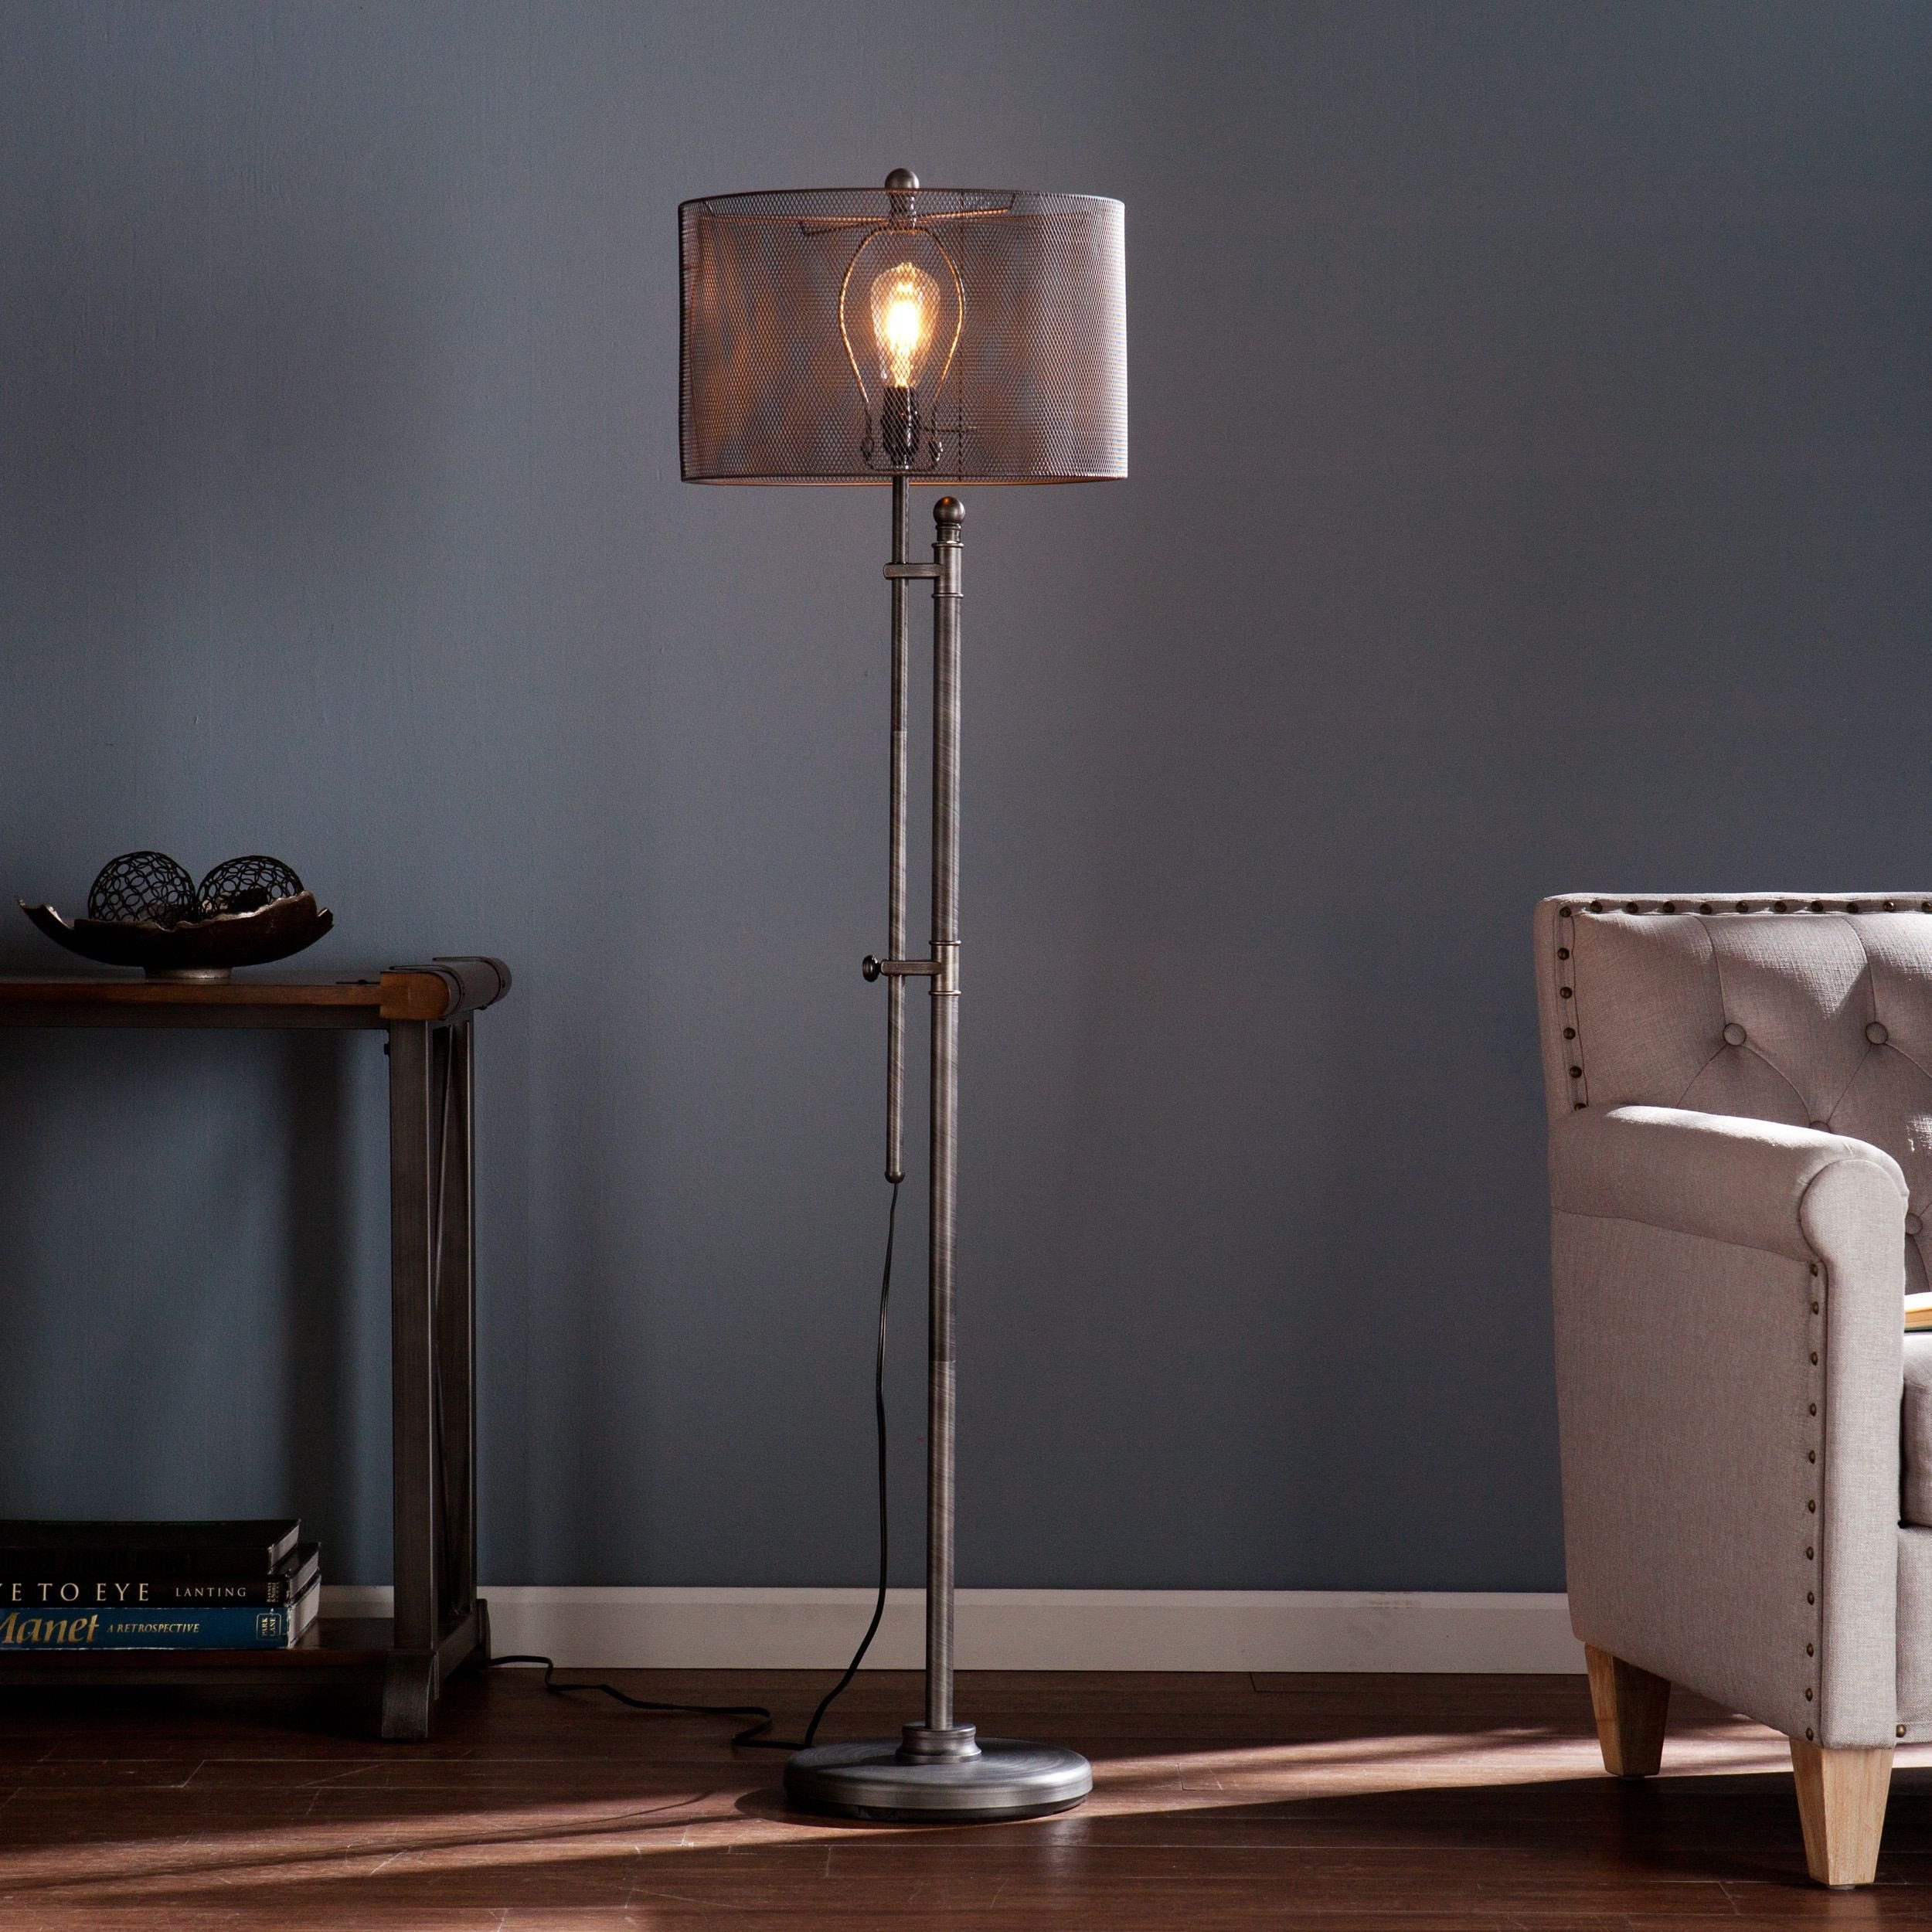 Standing Lamps for Bedroom Best Of Carbon Loft Modern Industrial Floor Lamp